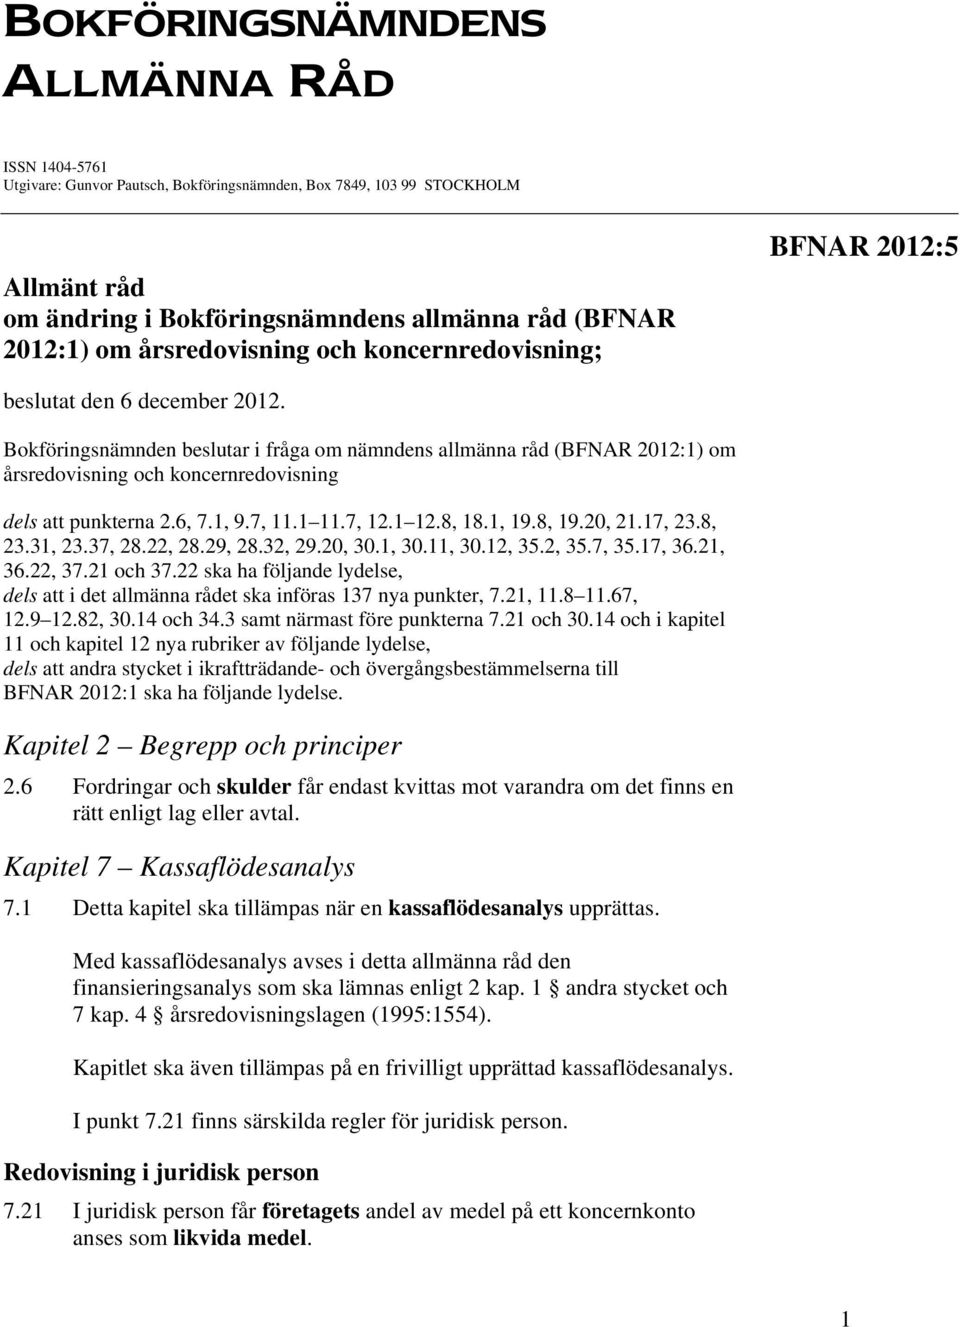 Bokföringsnämnden beslutar i fråga om nämndens allmänna råd (BFNAR 2012:1) om årsredovisning och koncernredovisning dels att punkterna 2.6, 7.1, 9.7, 11.1 11.7, 12.1 12.8, 18.1, 19.8, 19.20, 21.